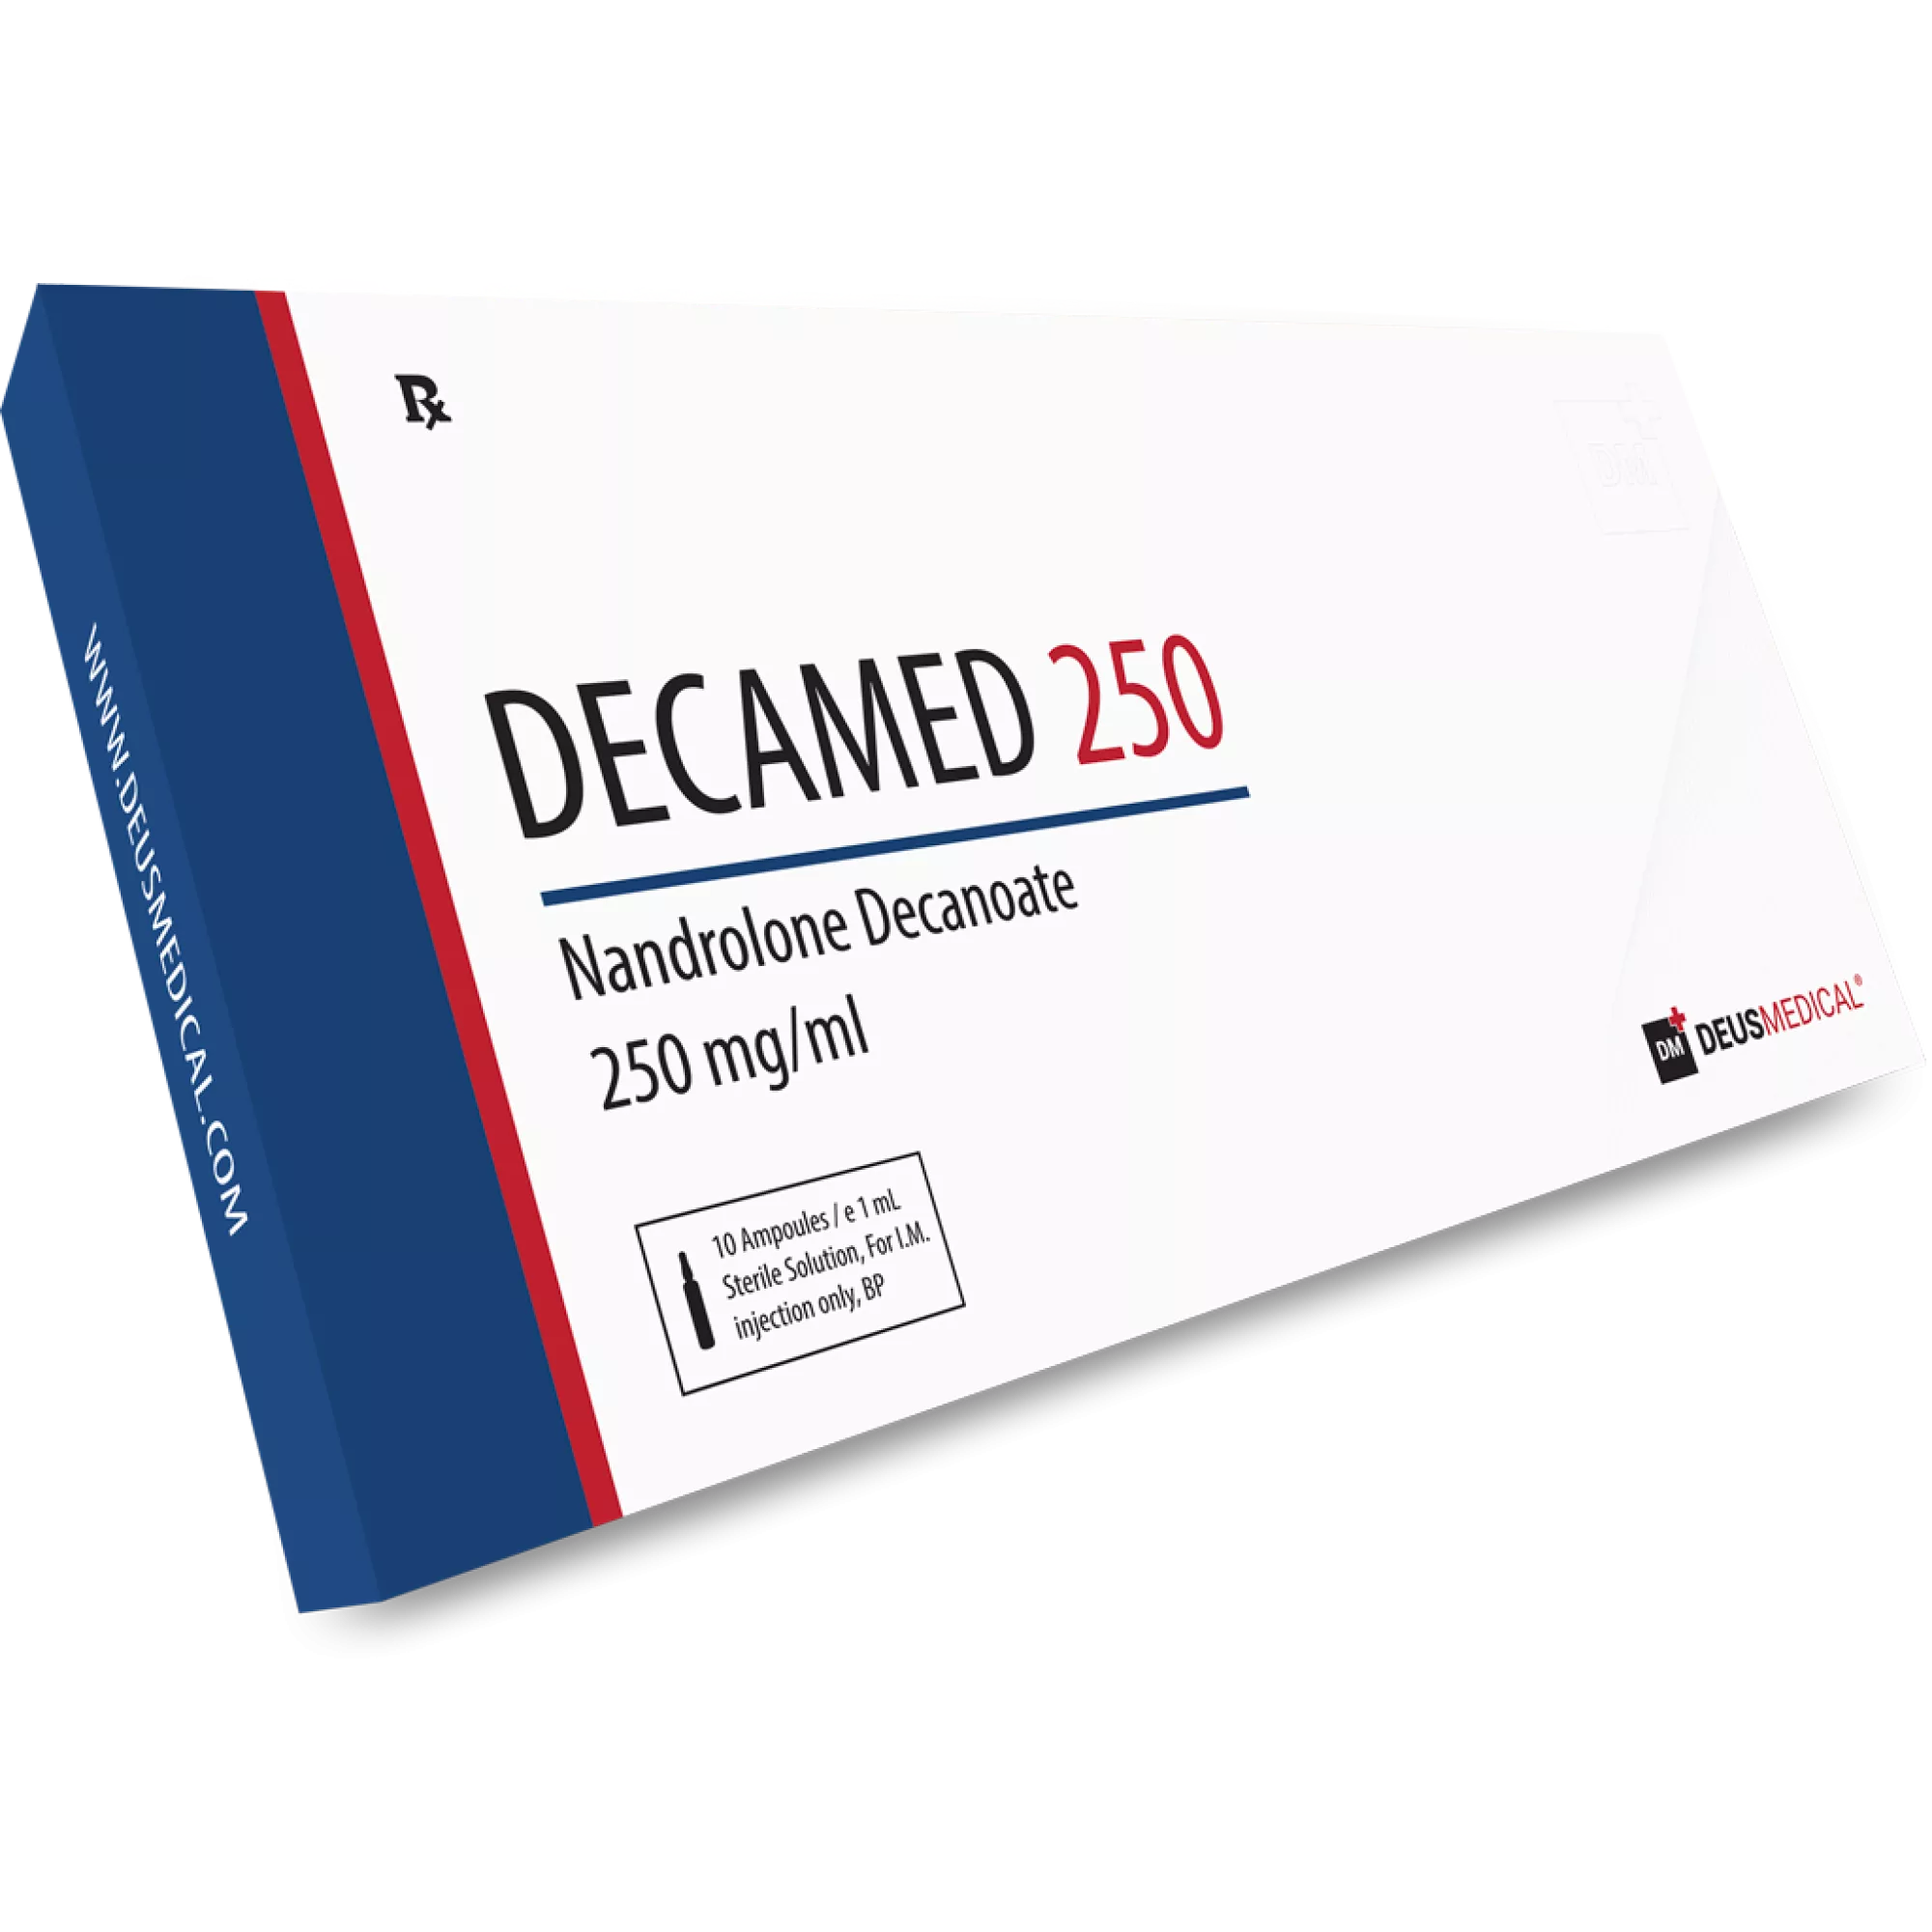 DECAMED 250 (Nandrolone Decanoate), Deus Medical, Köp steroider online - www.deuspower.shop